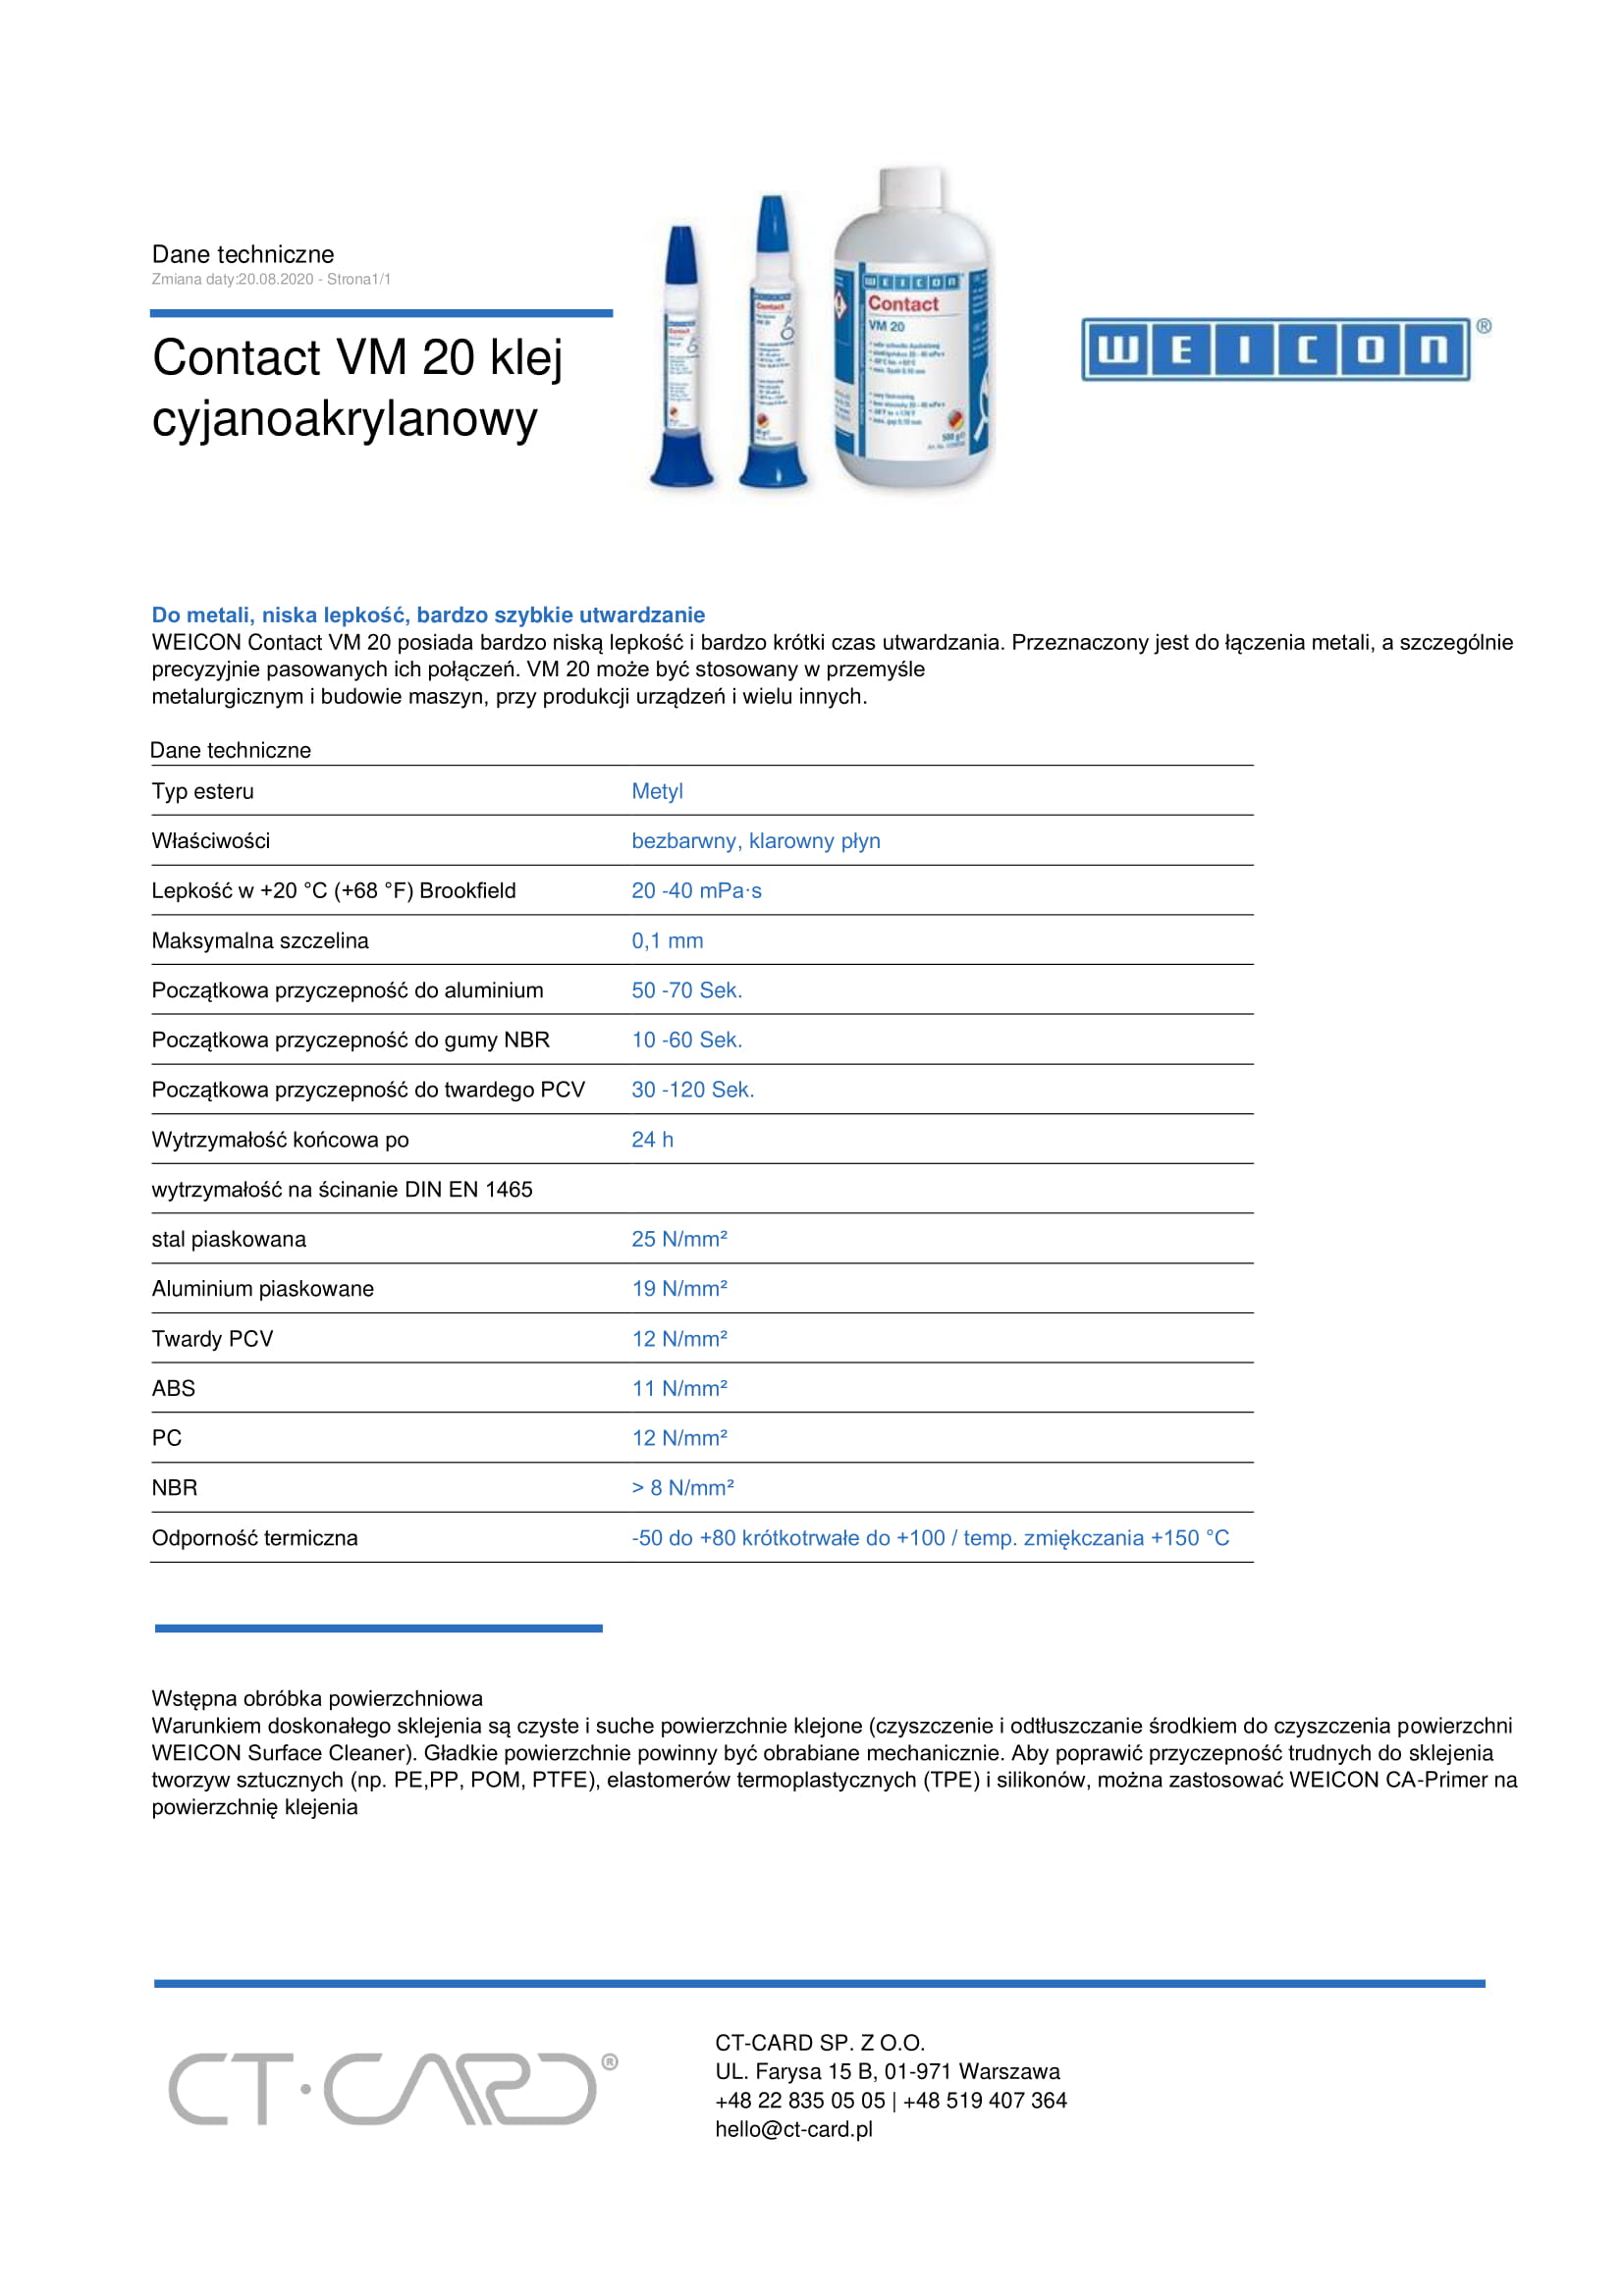 Contact VM 20 klej cyjanoakrylanowy-1